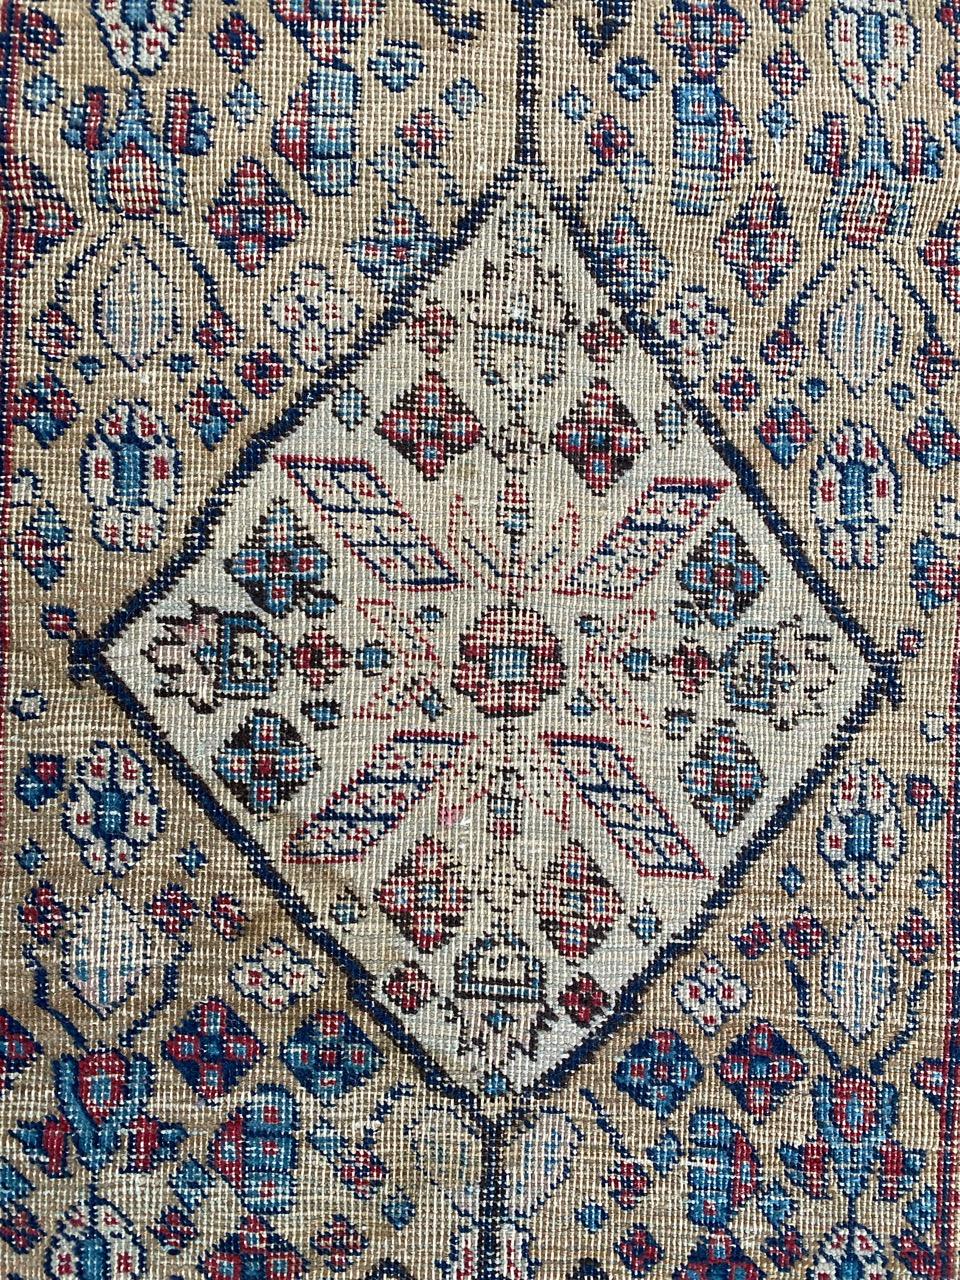 Hübscher tabrizischer Teppich aus dem späten 19. Jahrhundert mit schönem geometrischem Muster und schönen natürlichen Farben, vollständig handgeknüpft mit Wollsamt auf Baumwollgrund.

✨✨✨
